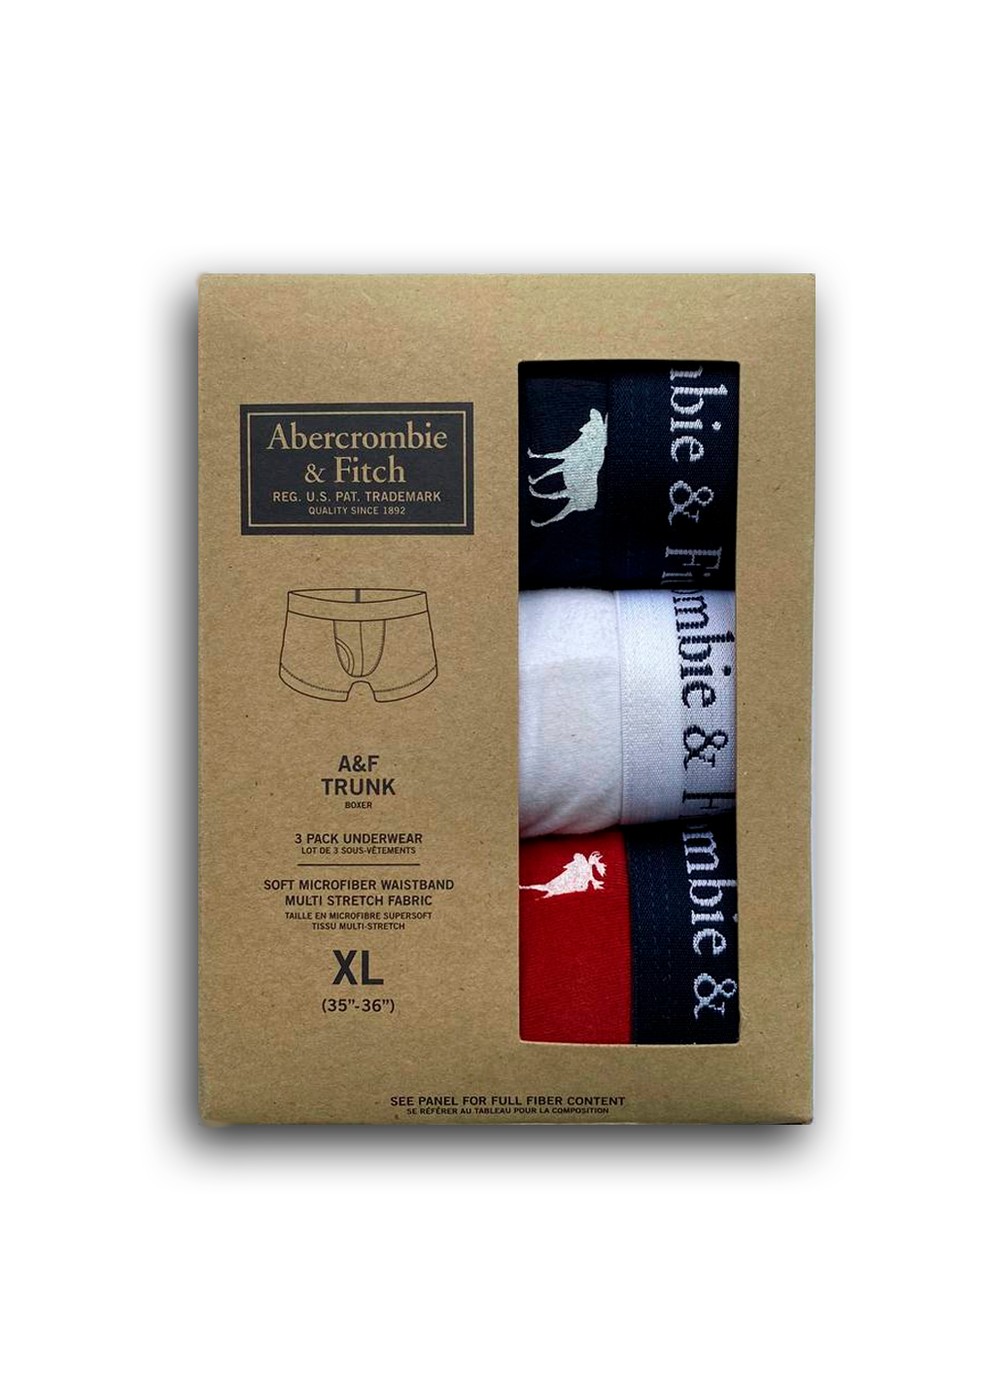 Набор нижнего белья Abercrombie & Fitch (3 шт.), XXL, XXL